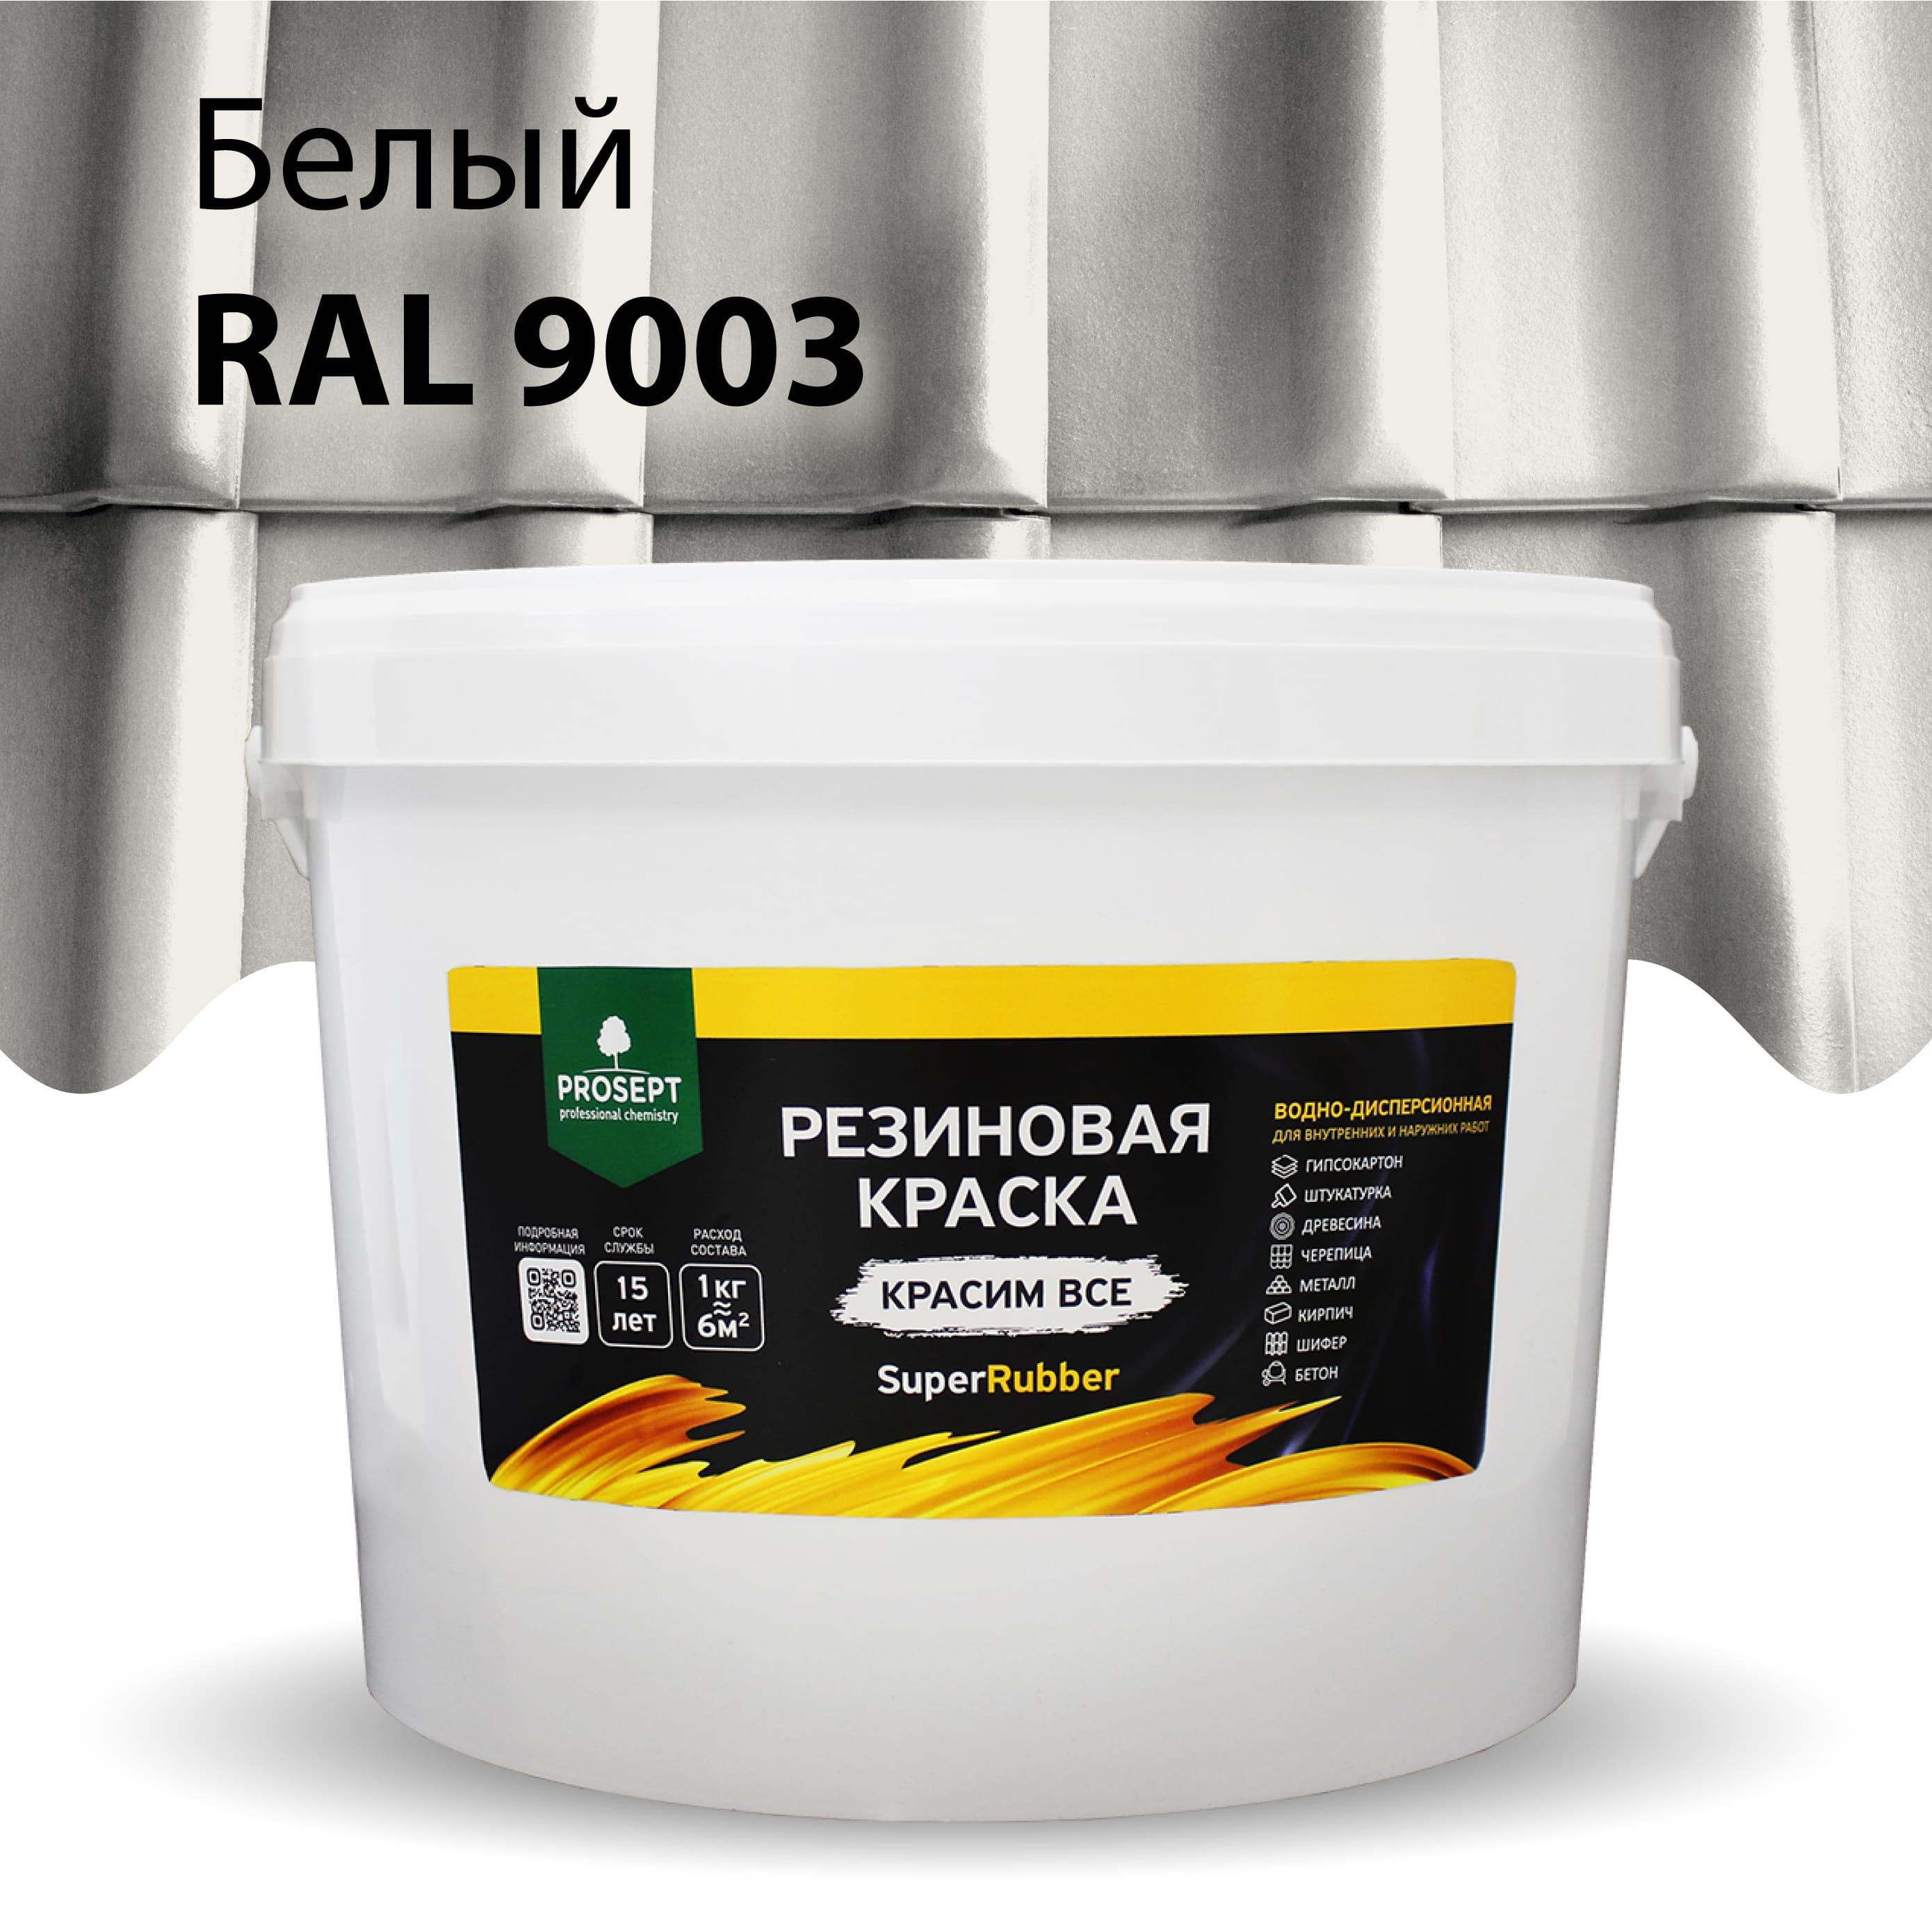 Краска Резиновая краска SuperRubber, RAL 9003 (белая), 12 кг